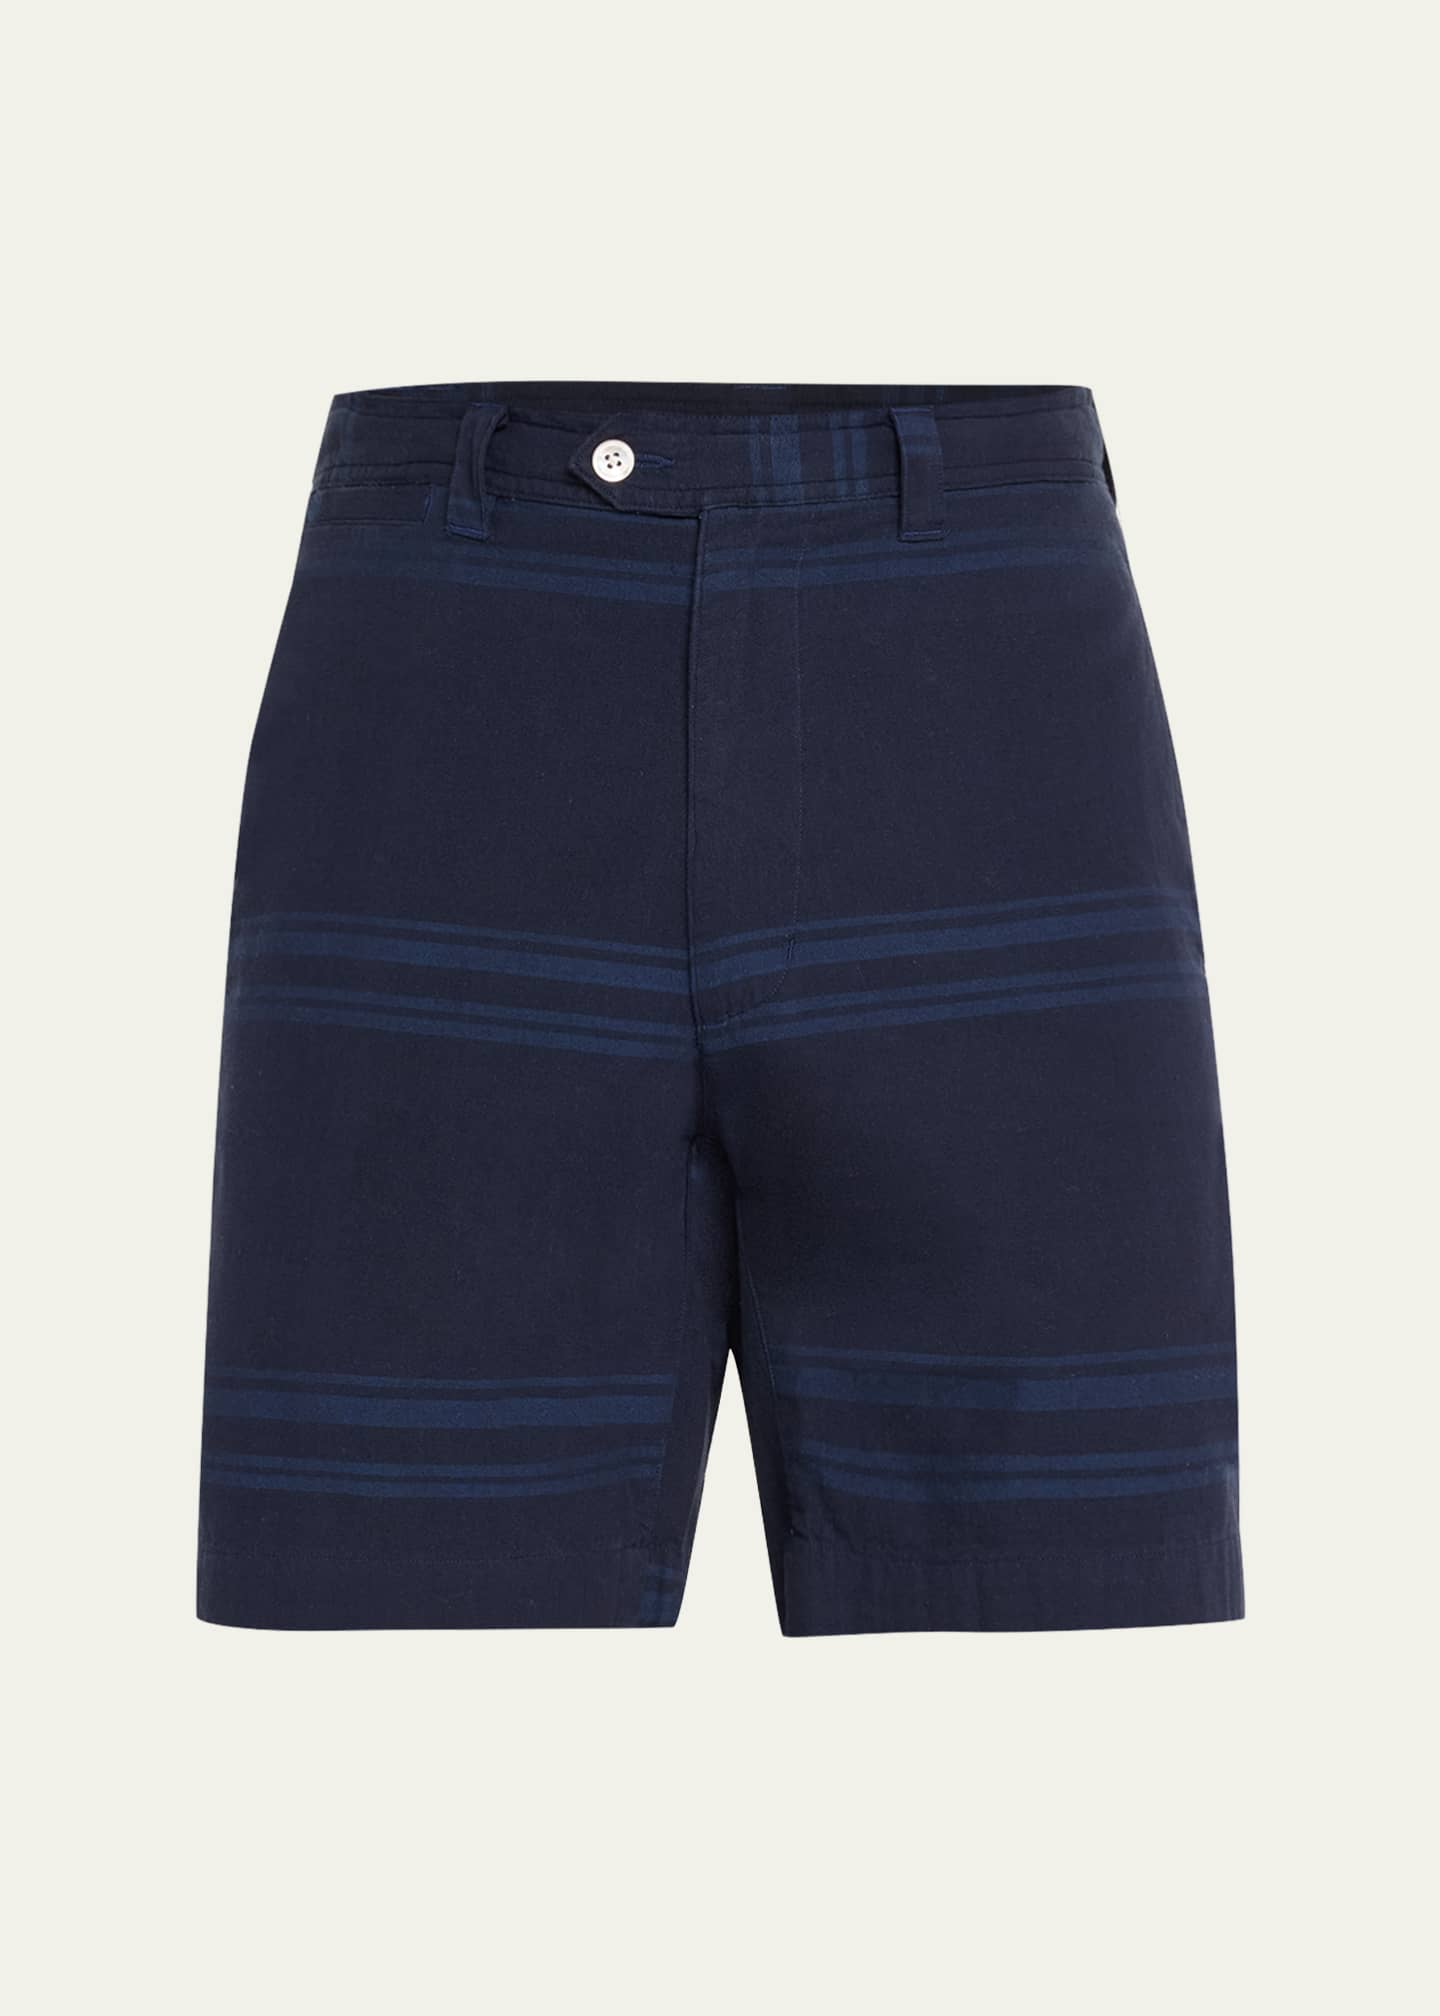 Original Madras Trading Co. Men's Tonal Madras Shorts - Bergdorf Goodman